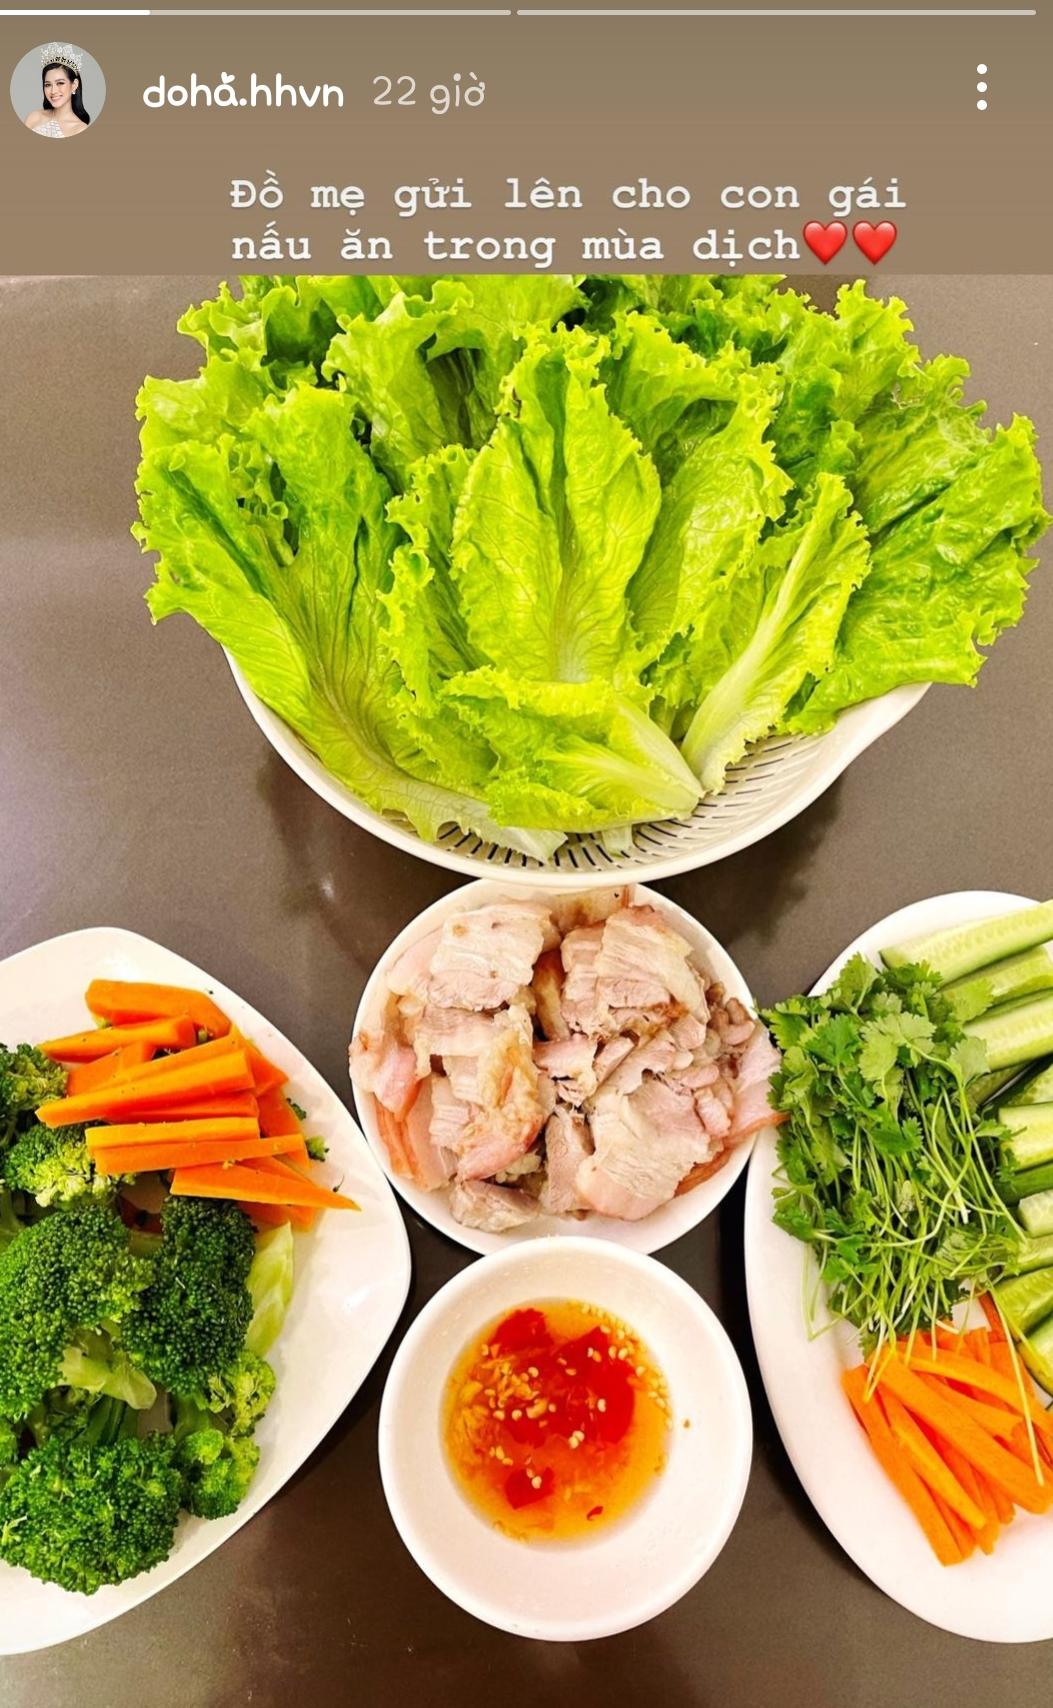 Hoa hậu Việt Nam khoe khéo bữa ăn rất 'fresh' được cô làm từ đồ mẹ gửi ở quê lên!